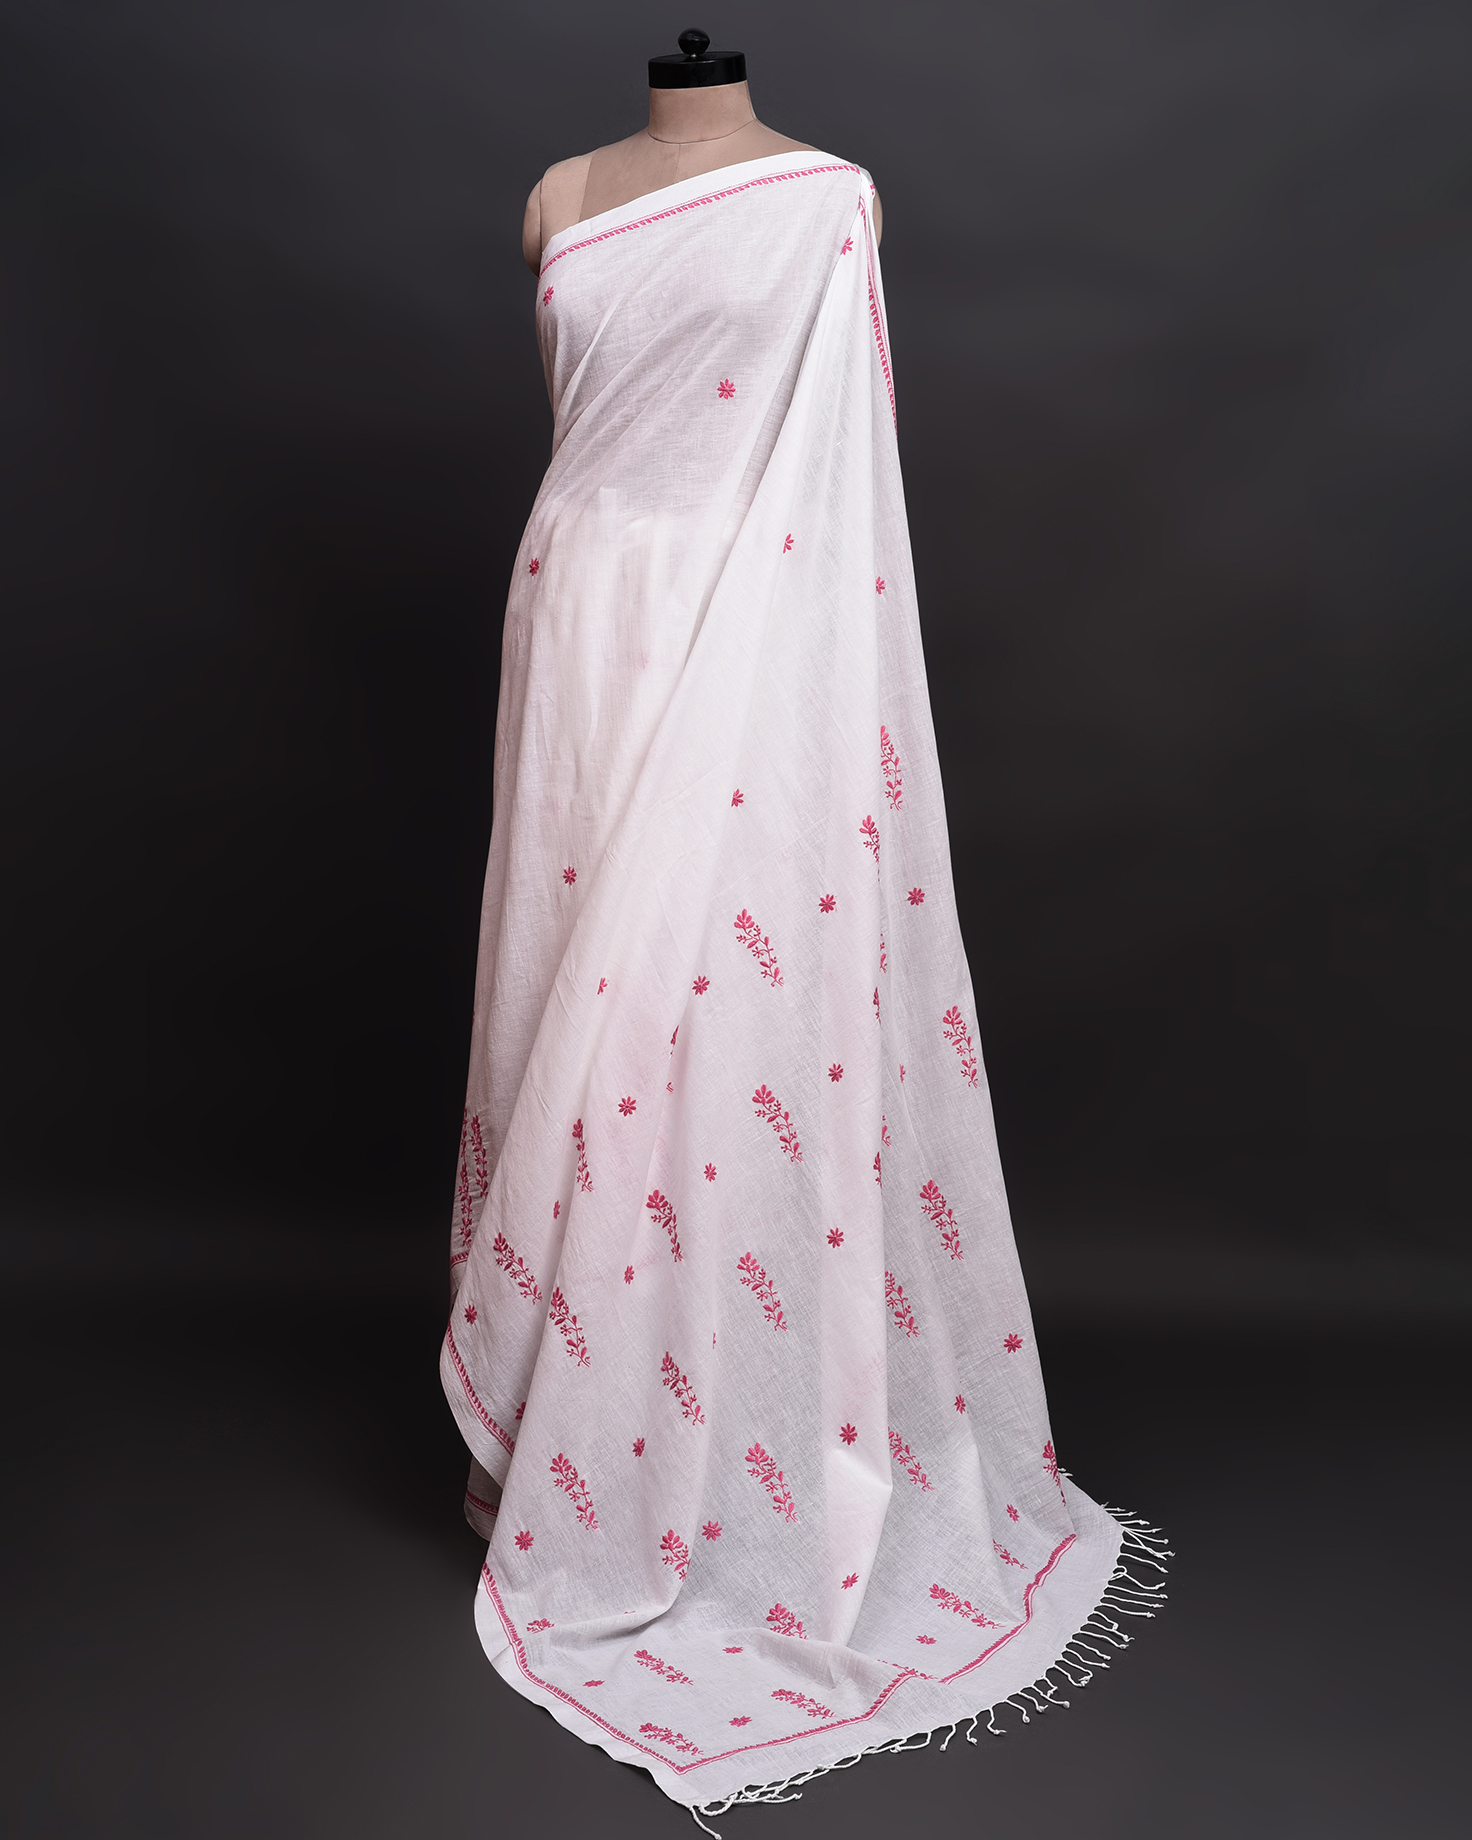 handlooom sari with Lucknowi chikankari embroidery handmade pink white natural